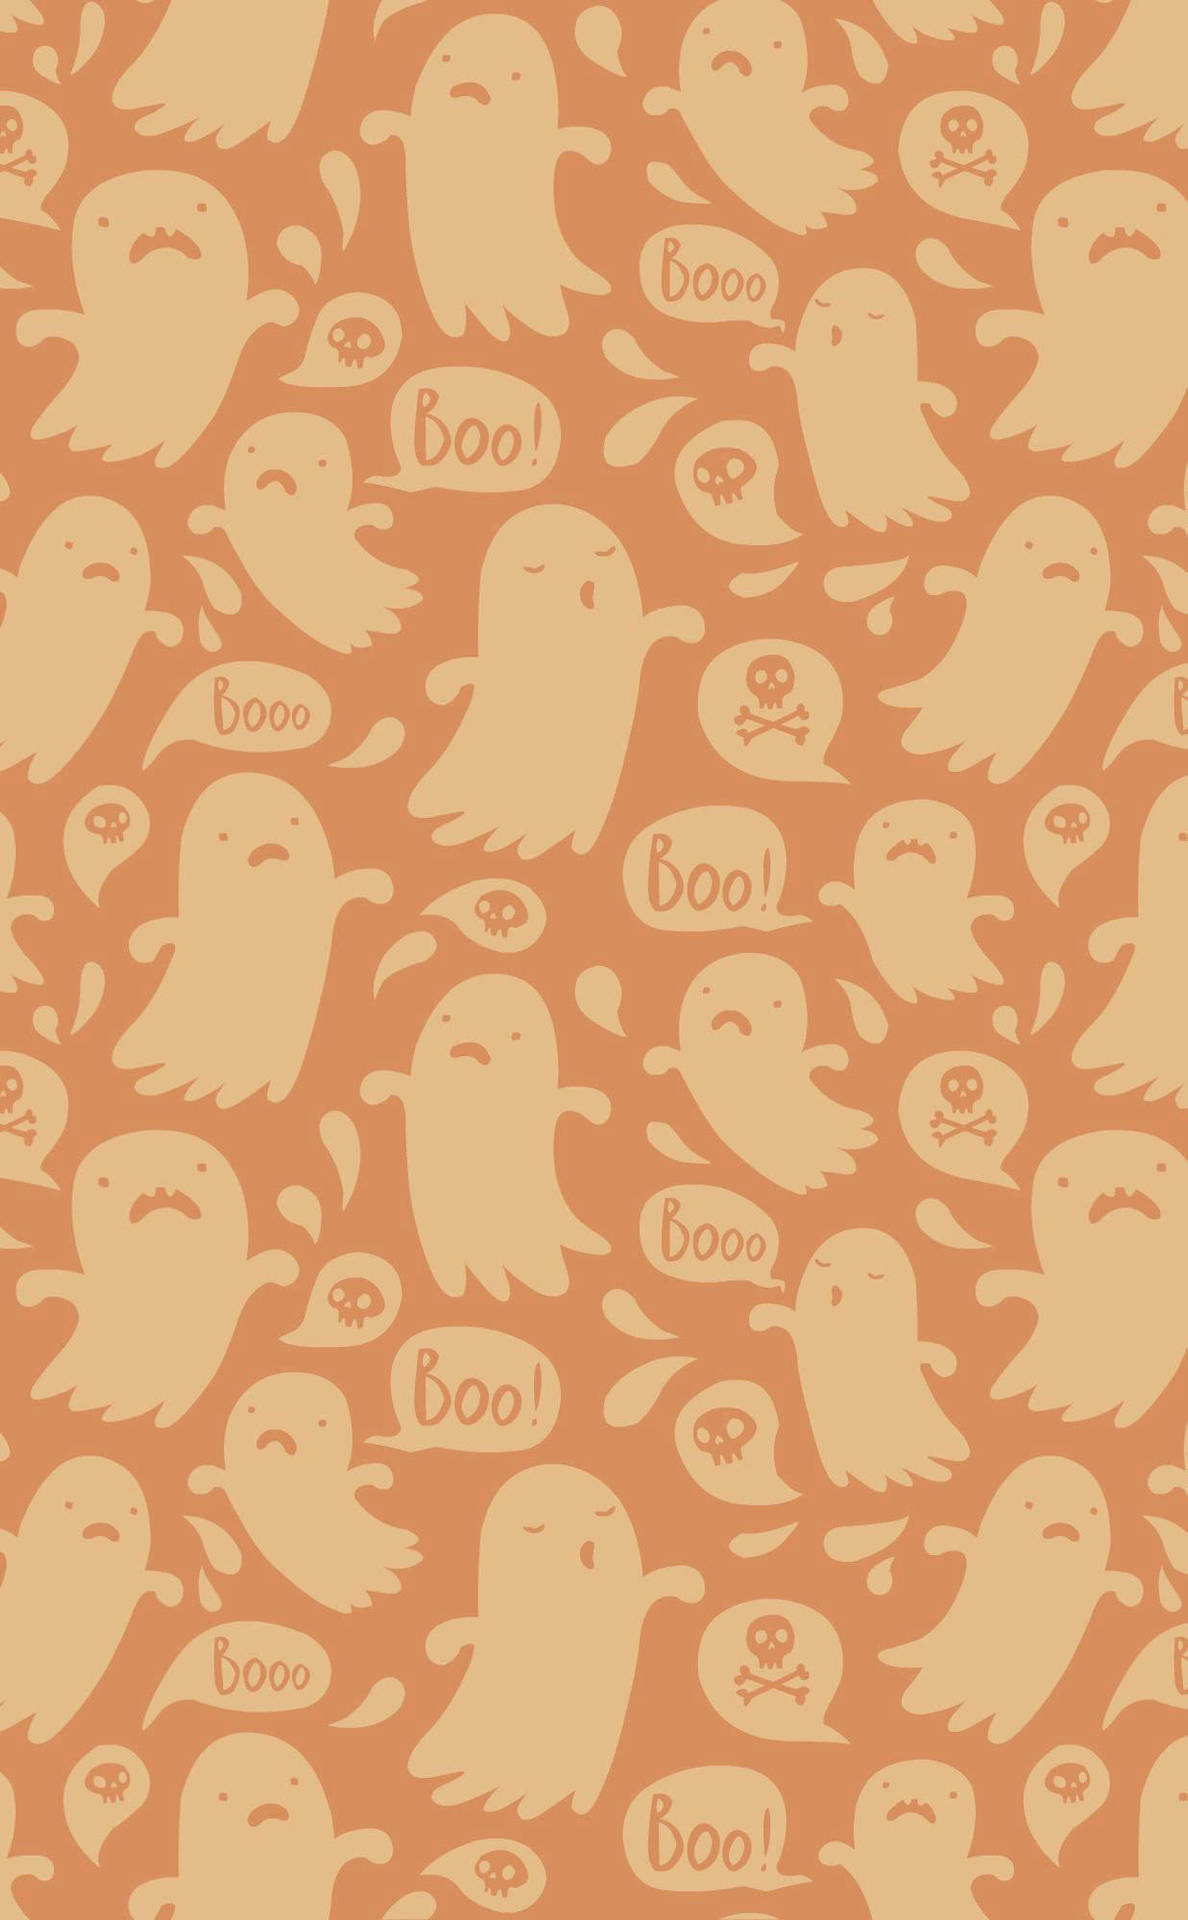 Get Ready for Spooky Season! Wallpaper